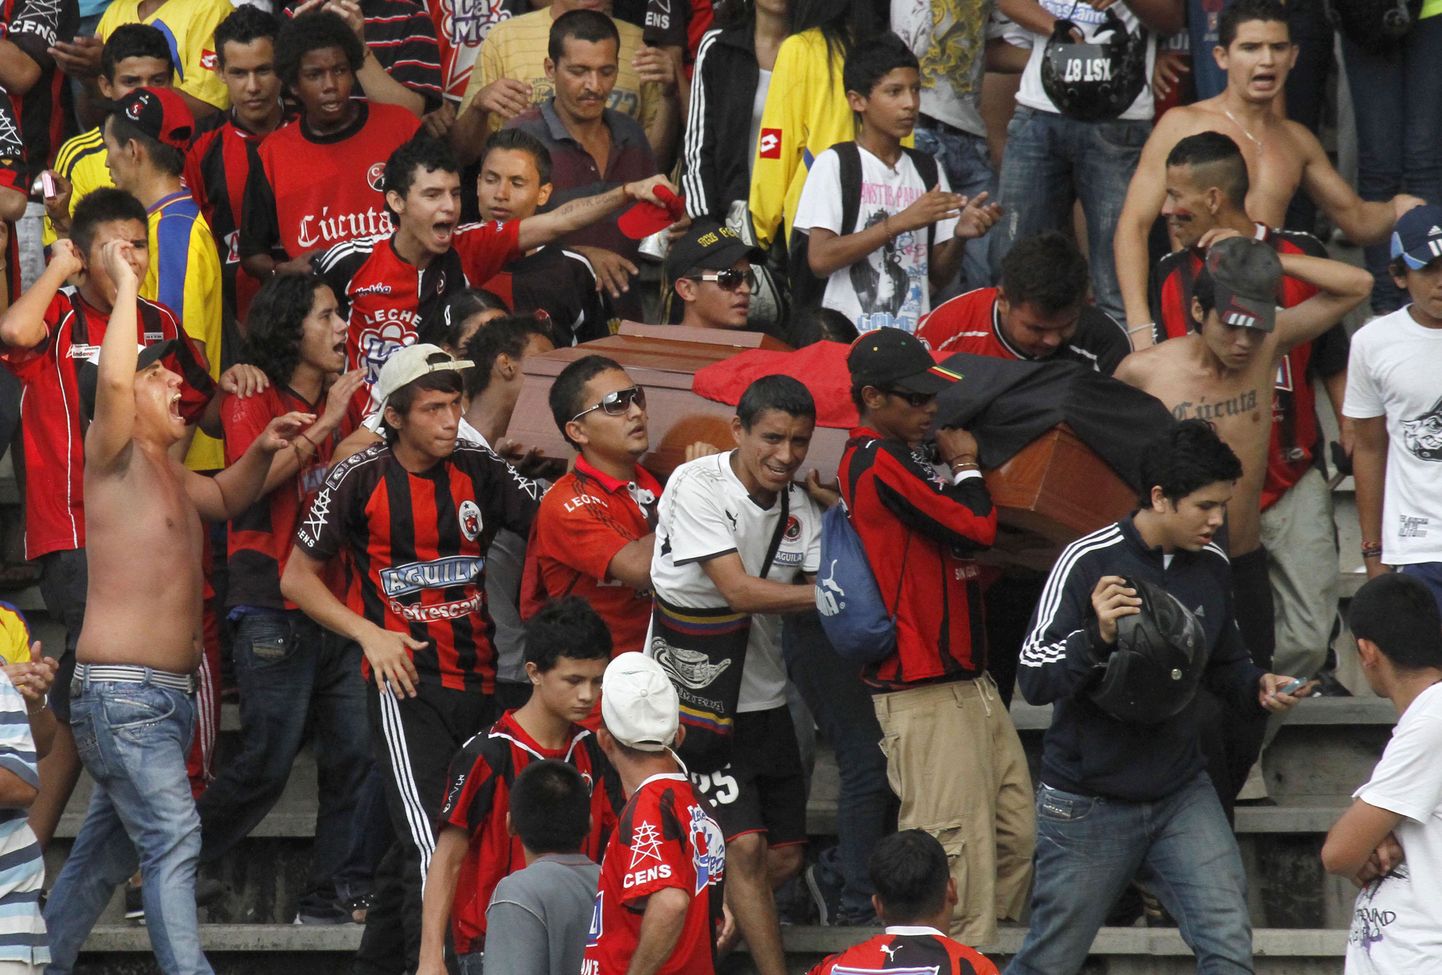 Cucuta Deportivo jalgpallimeeskonna fännid võtsid staadionile kaasa 17-aastase surnud poisi.